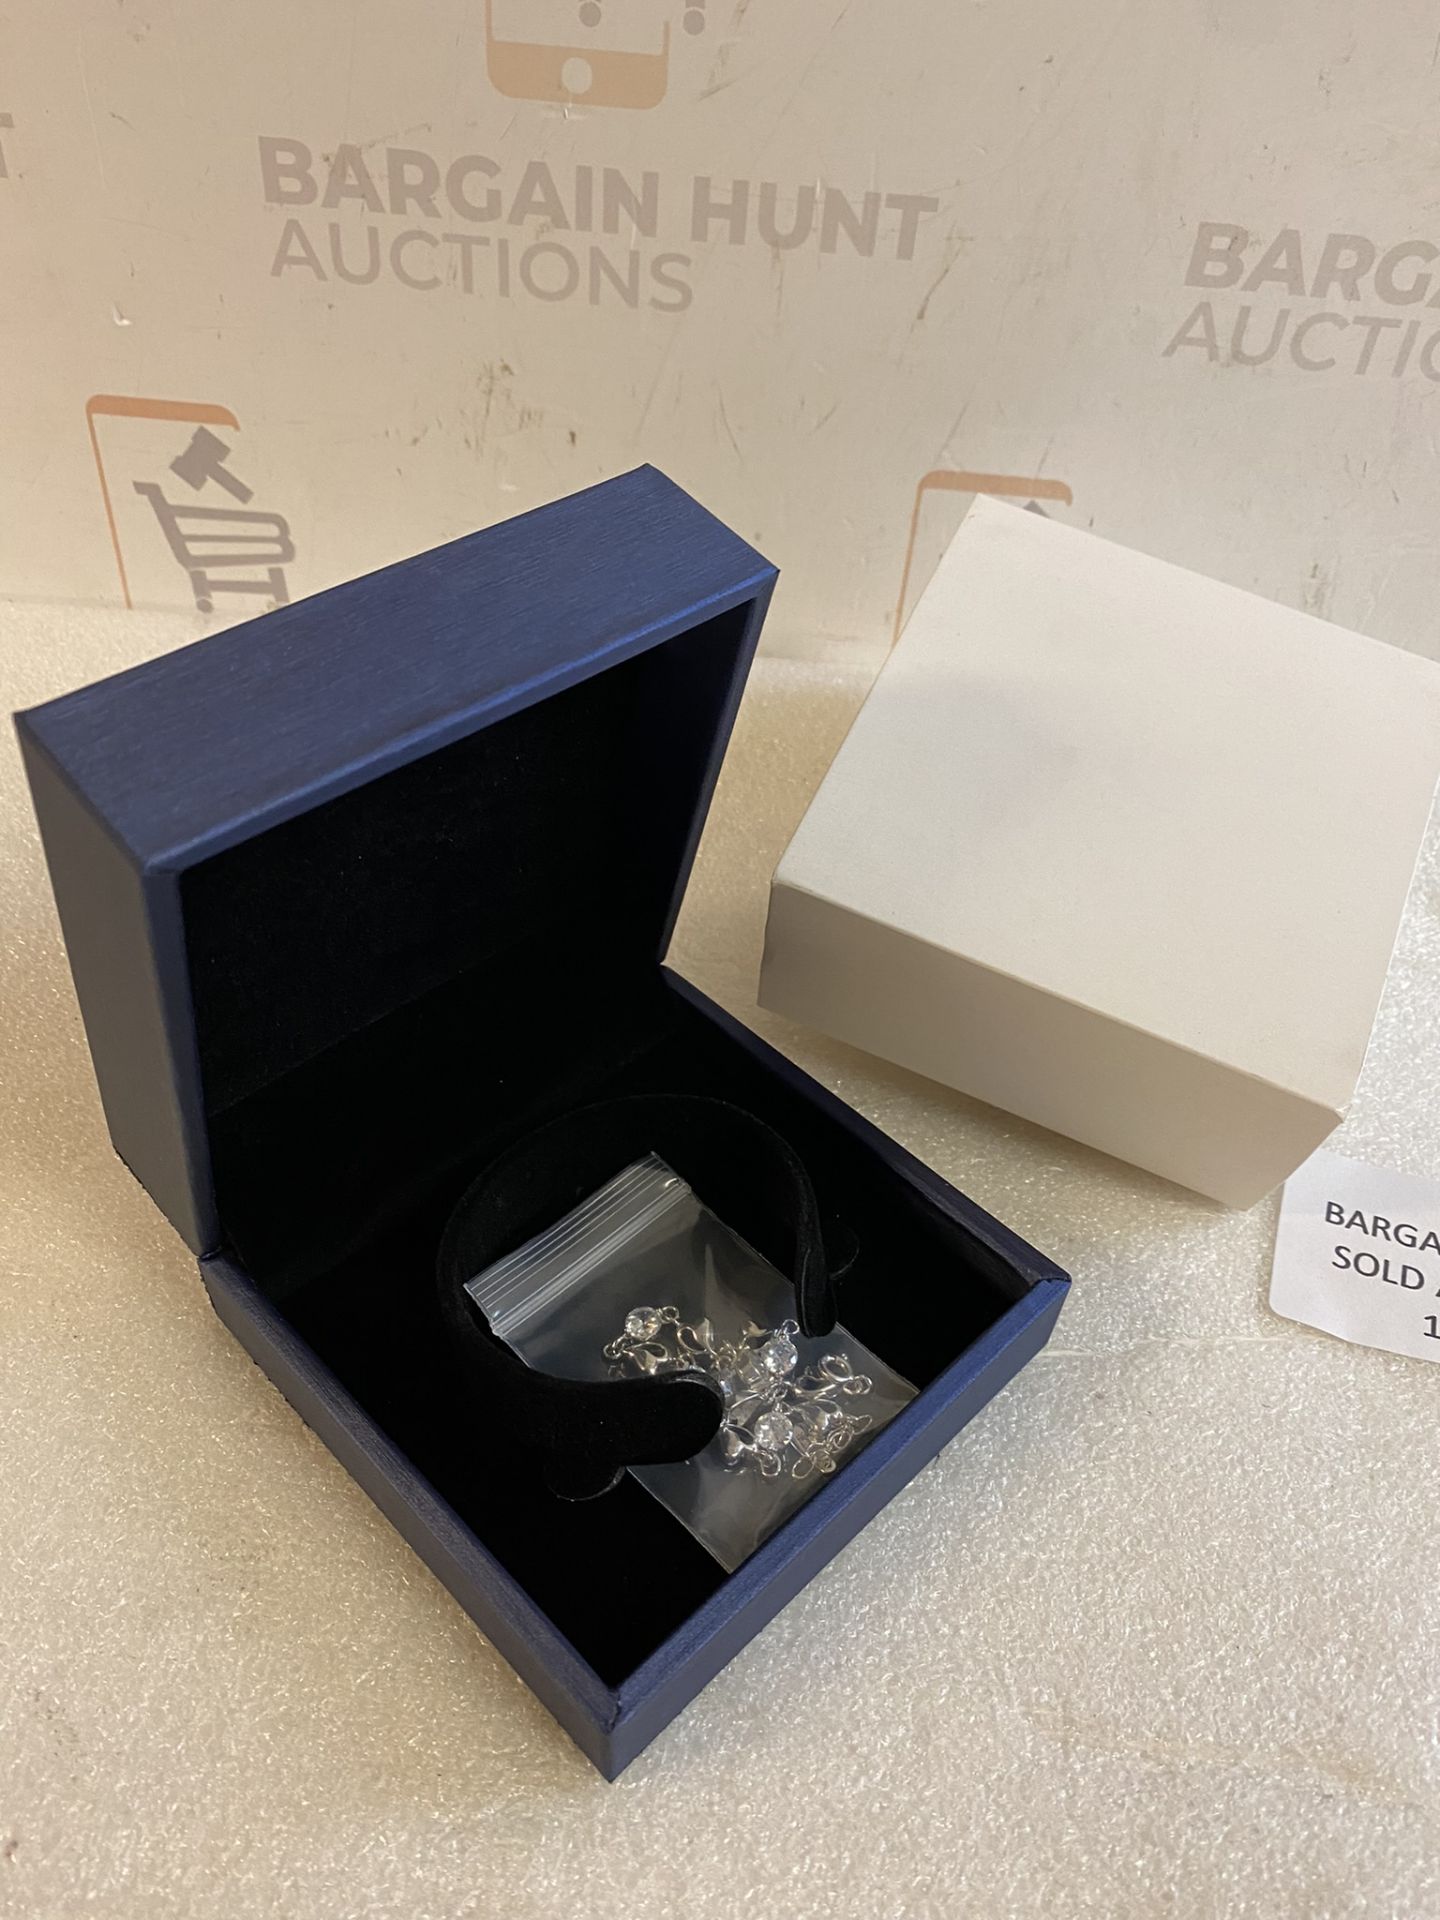 Selead 999 Silver Jewellery Women's Bracelet in Gift Box RRP £41.99 - Image 2 of 2